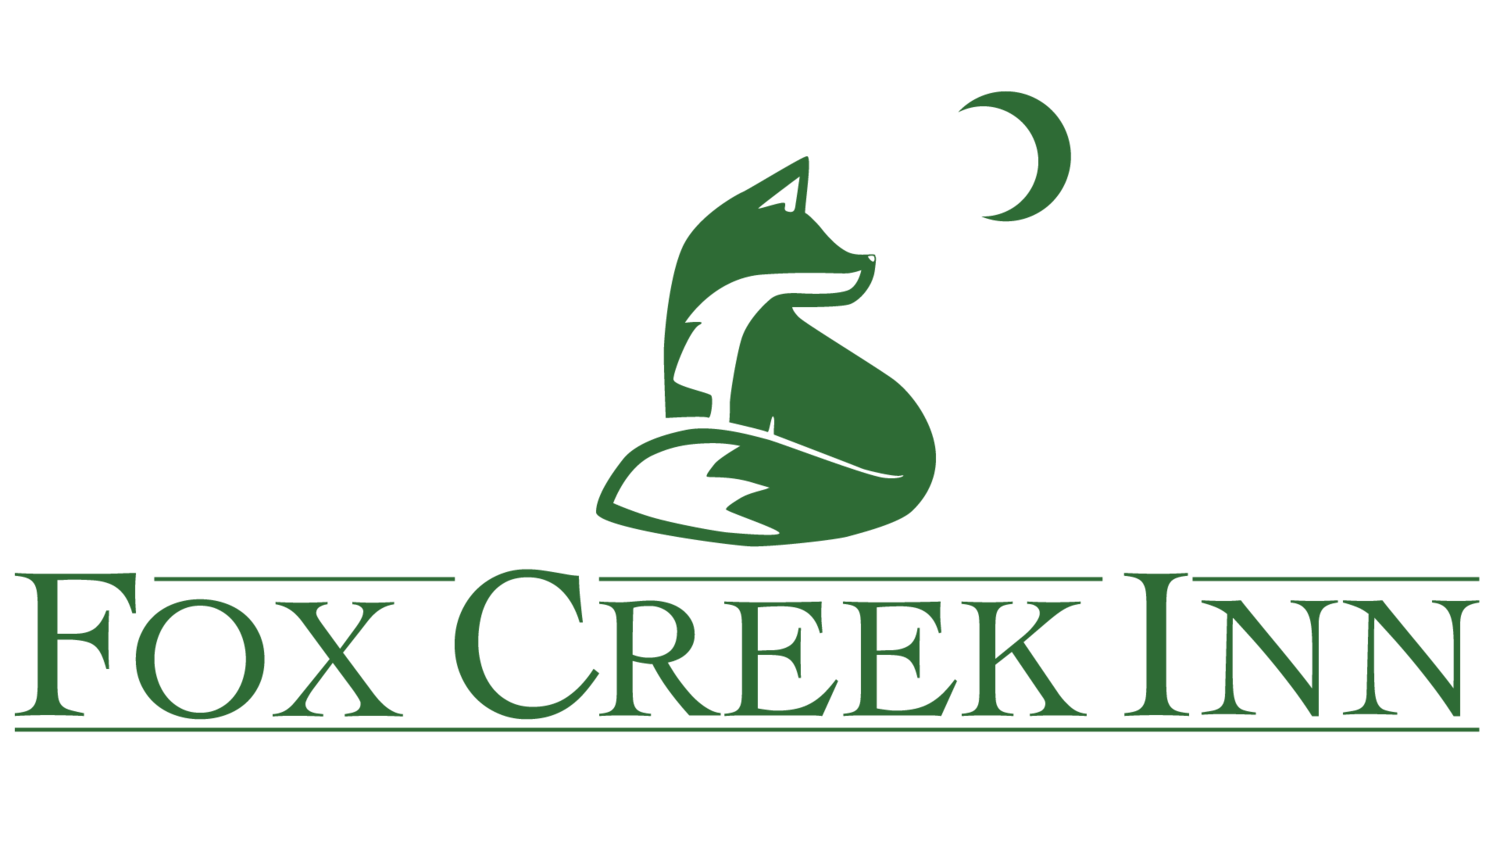 Fox Creek Inn